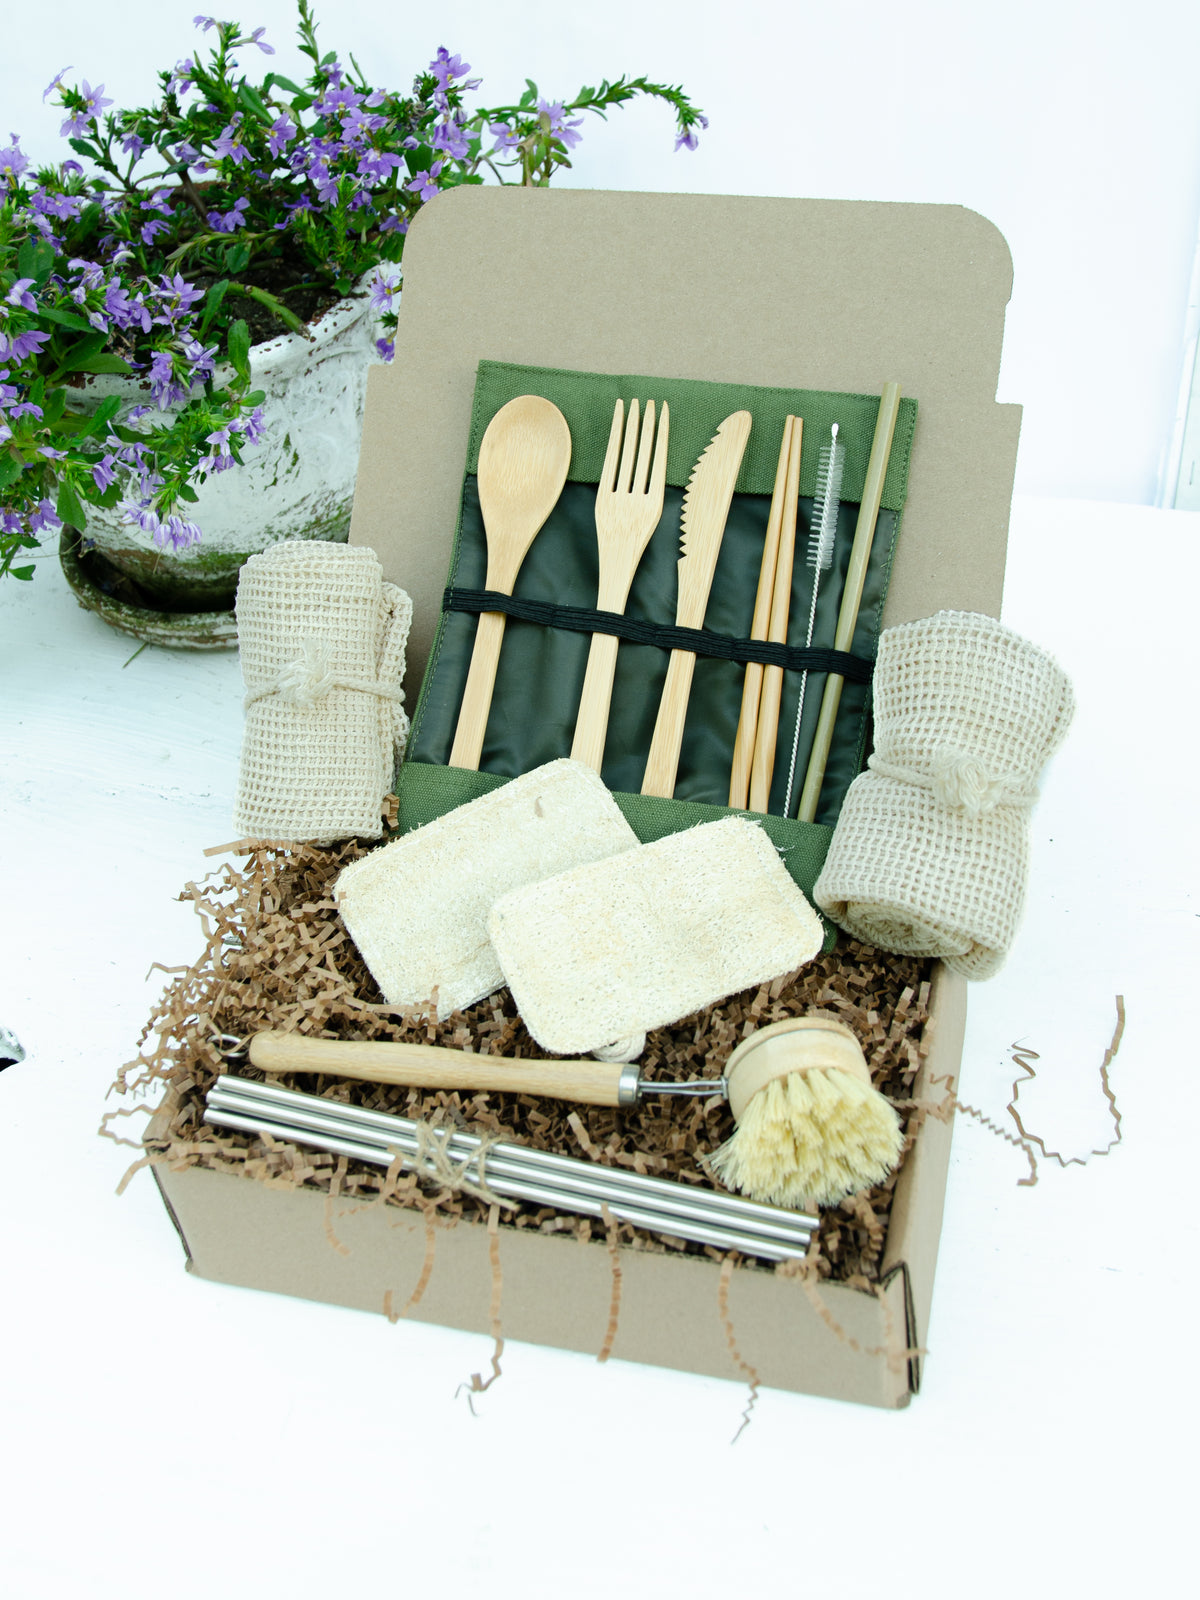 Zero Waste Eco-Friendly 16 Piece Sustainable Kitchen Kit Gift Box,Reusable Bamboo Utensil Set,Reusable Straw Set,Reusable Bags, Eco Sponges